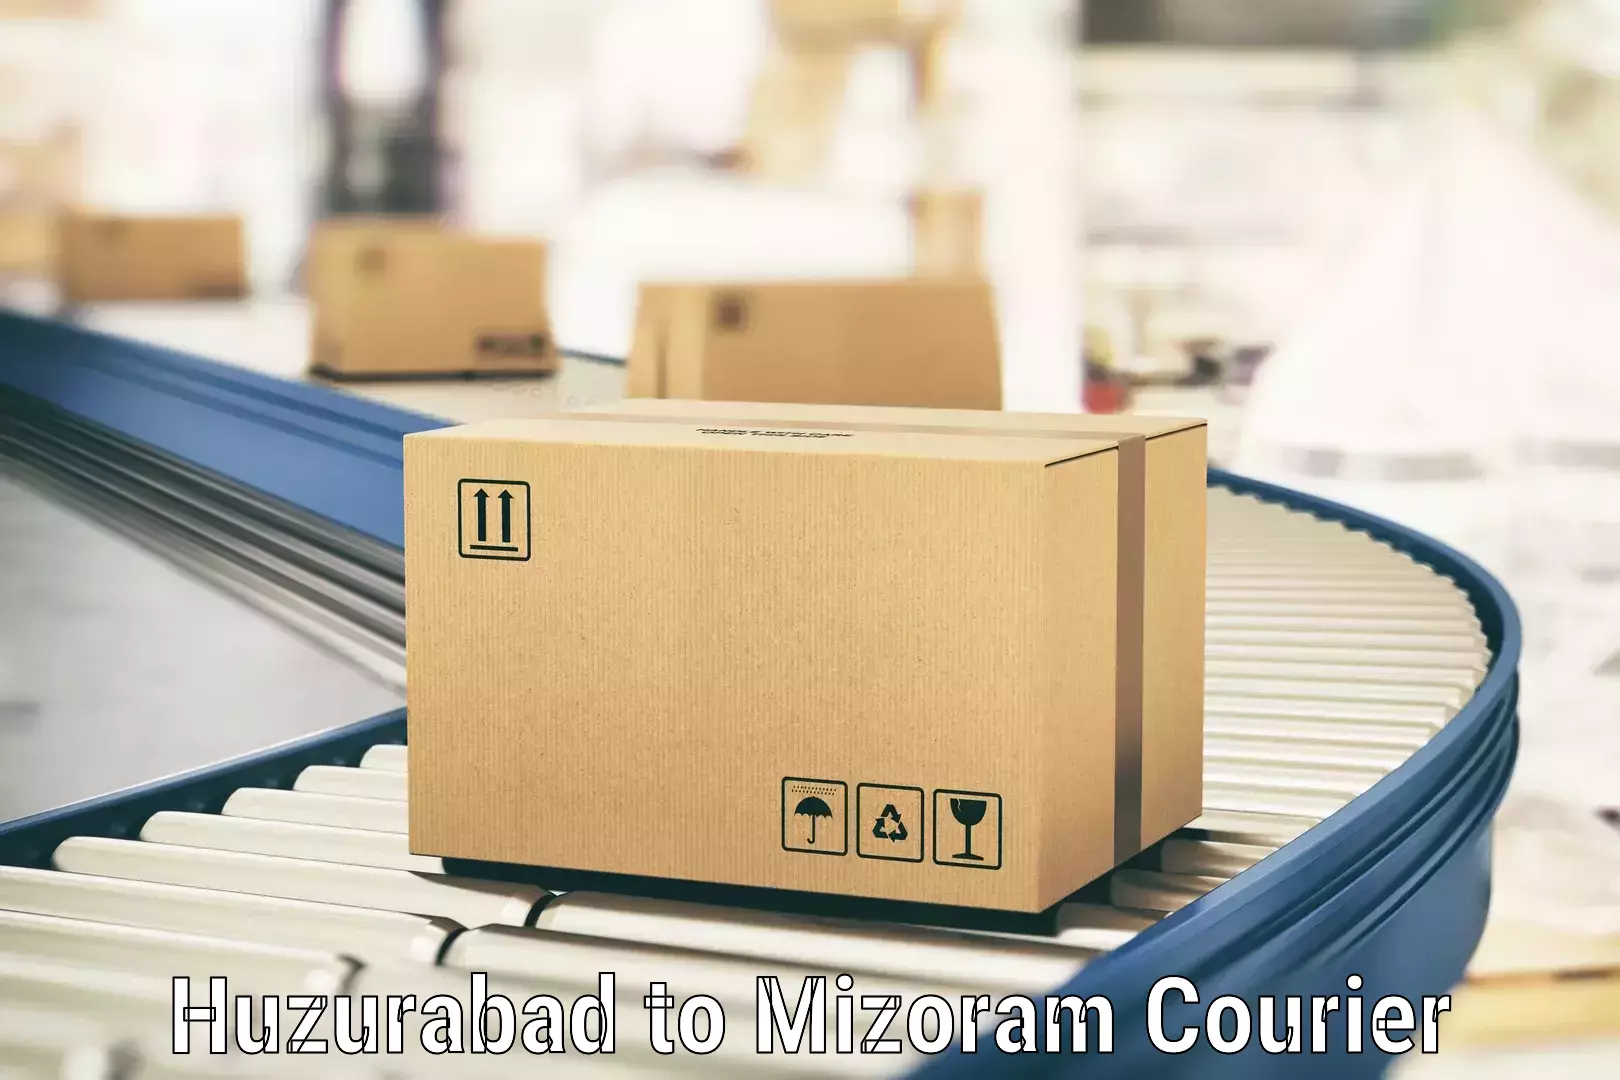 Flexible delivery scheduling Huzurabad to Mizoram